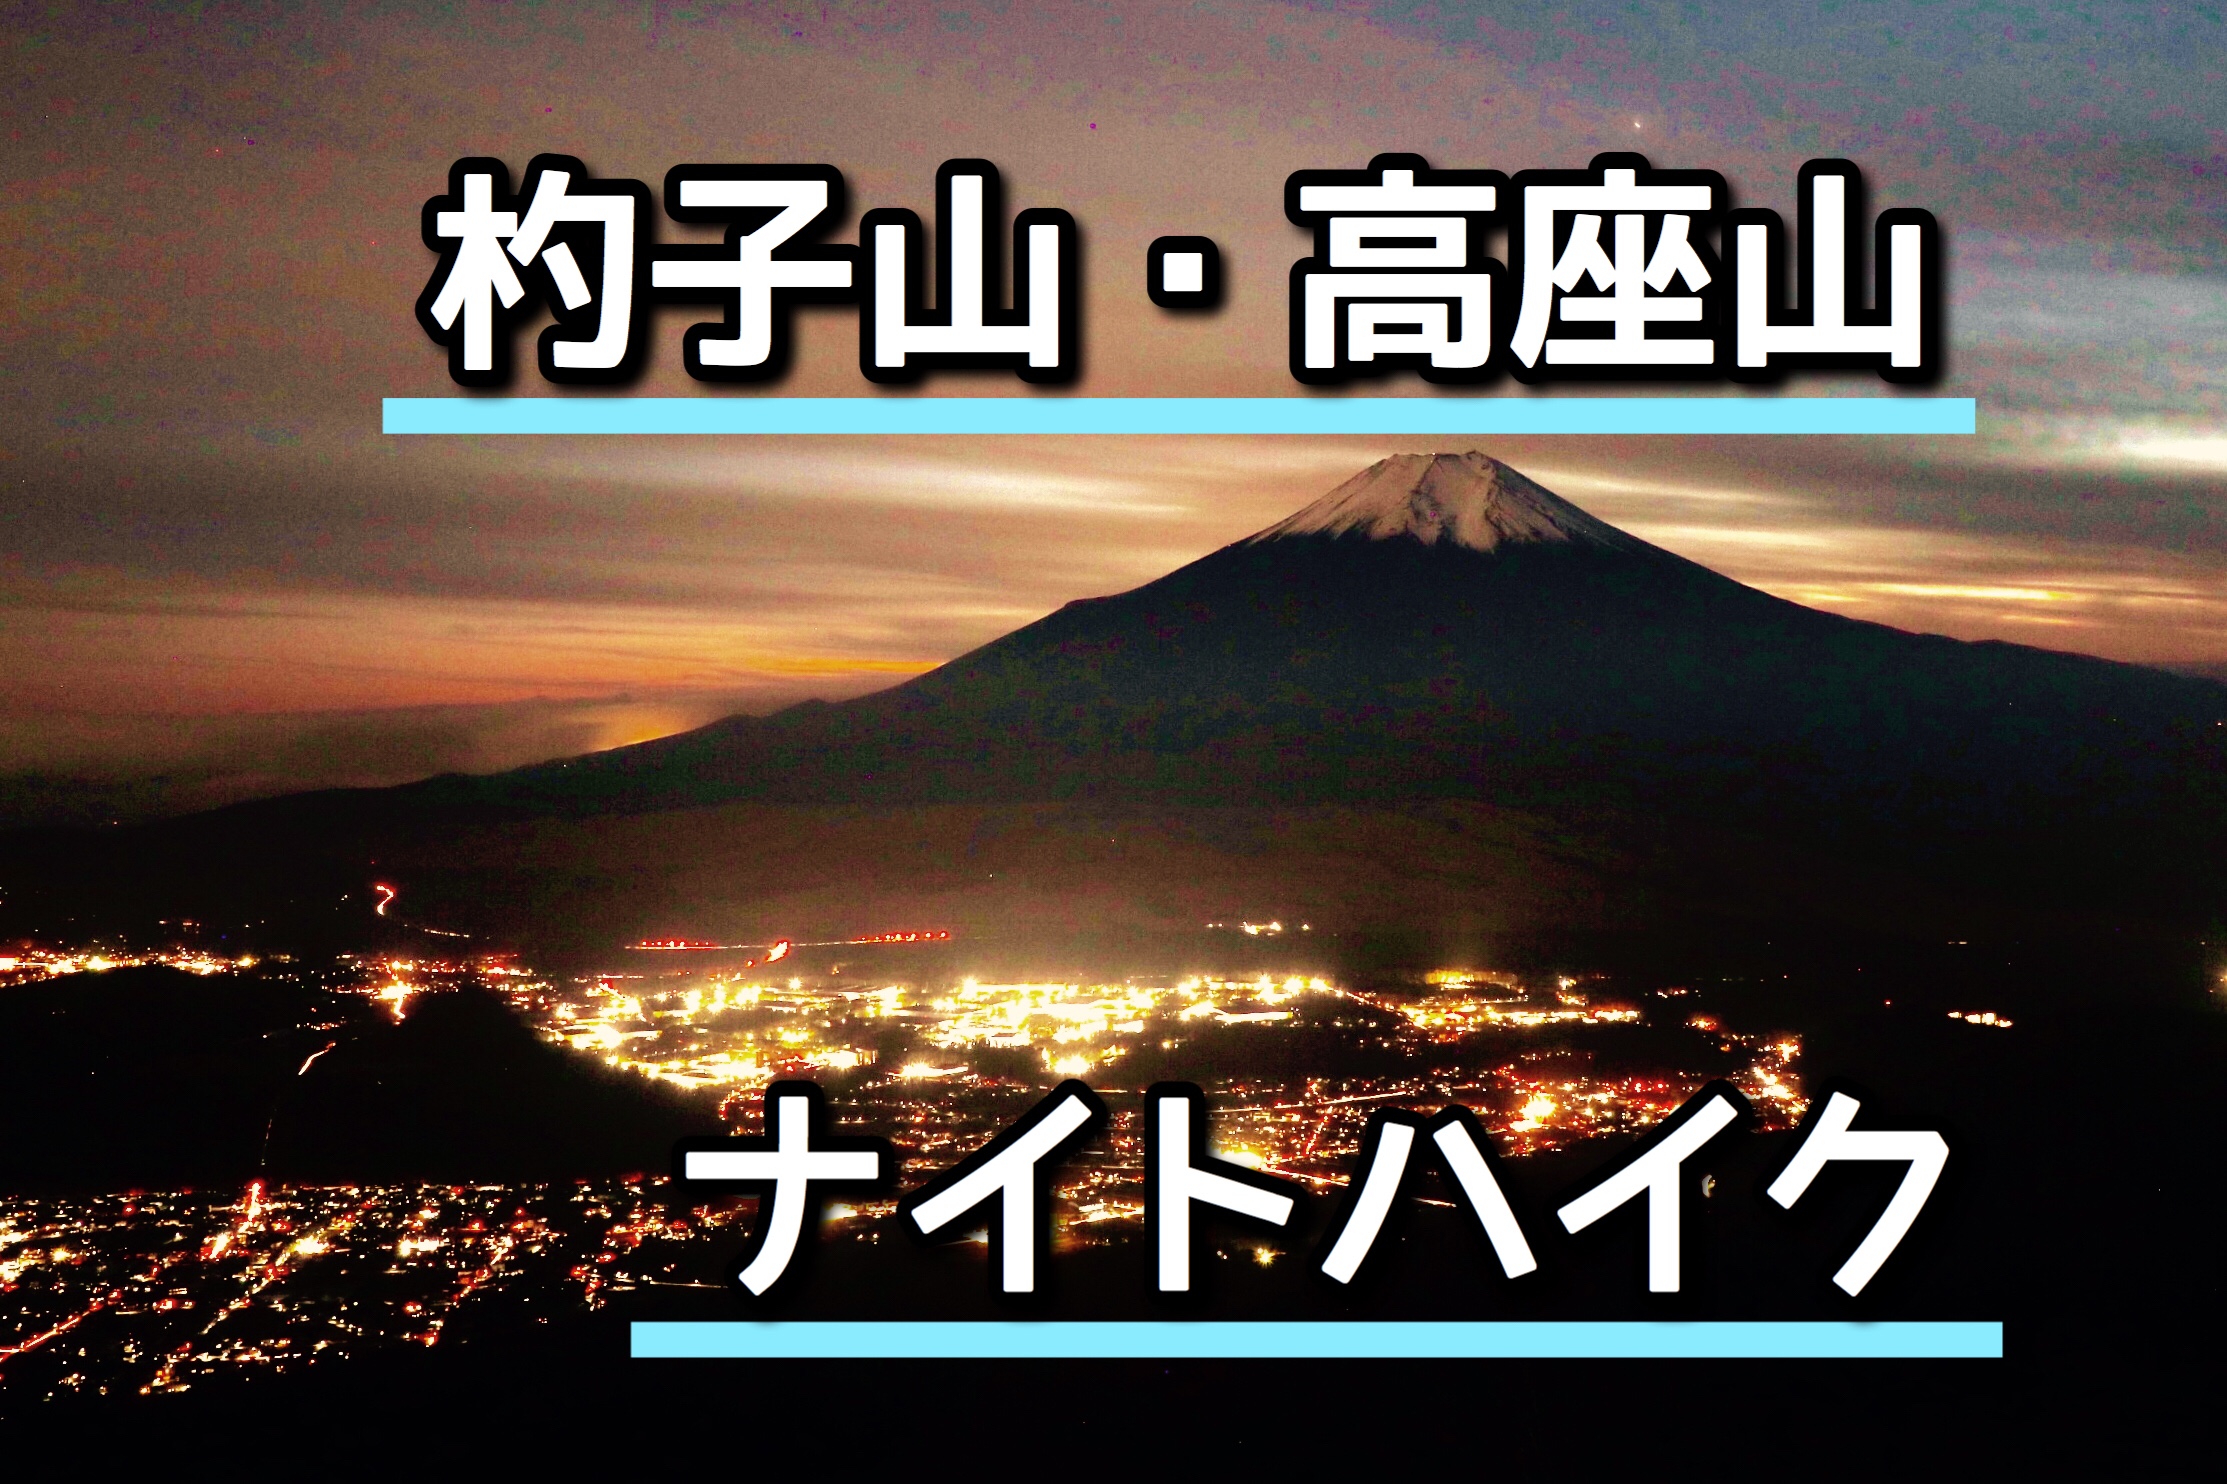 夜景と紅葉が綺麗 富士山を見に杓子山 高座山へナイトハイク 鳥居地峠コース こりおつブログ